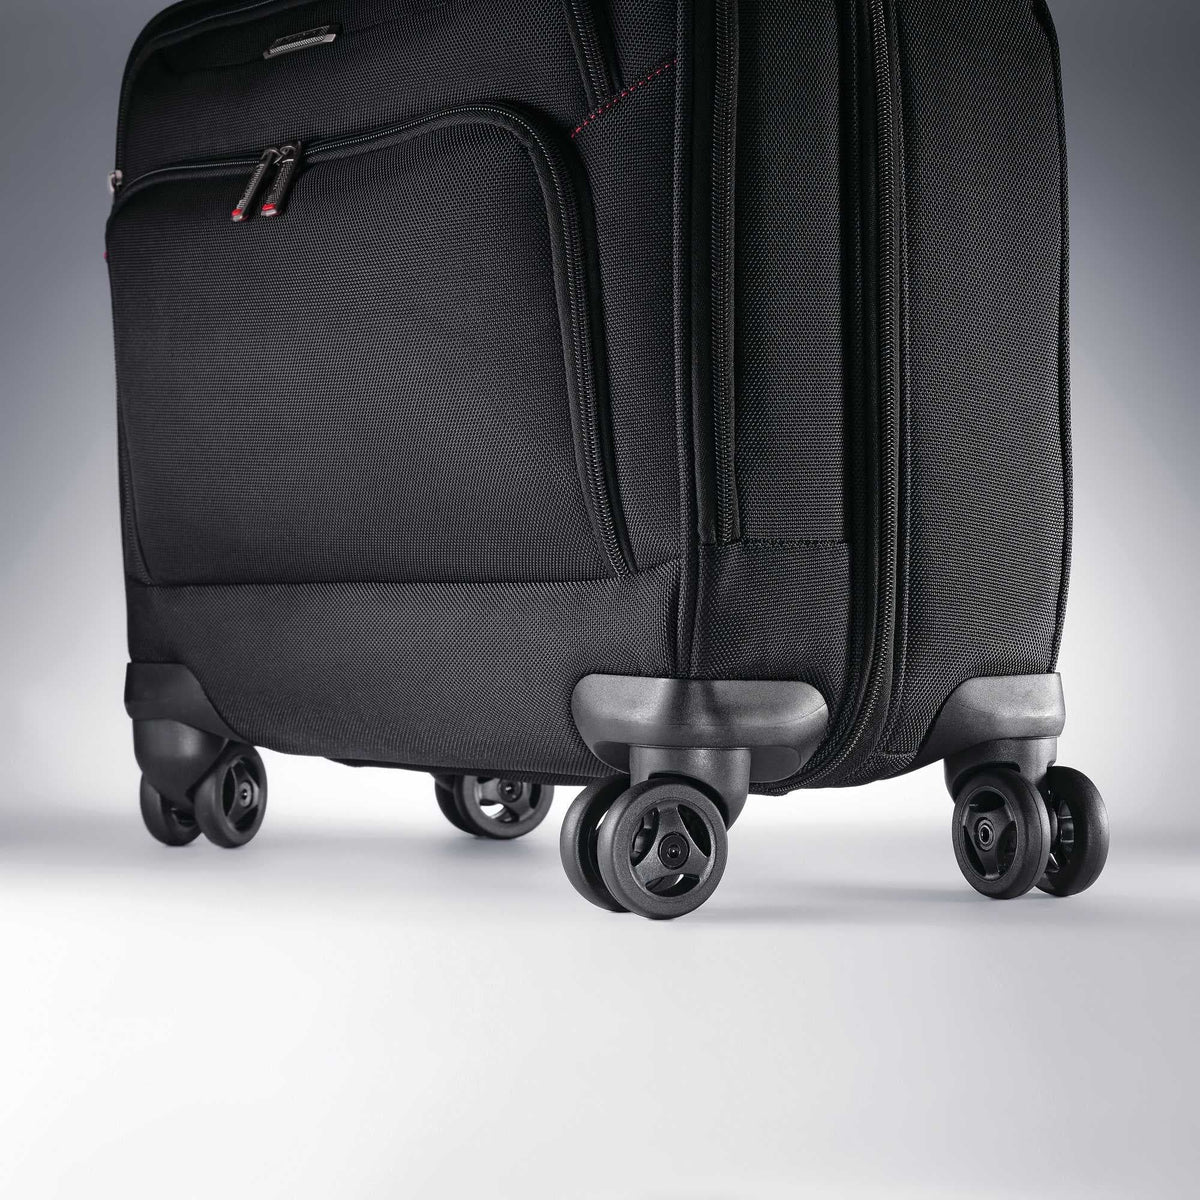 Samsonite Xenon 3.0 Mobile Office Spinner Luggage